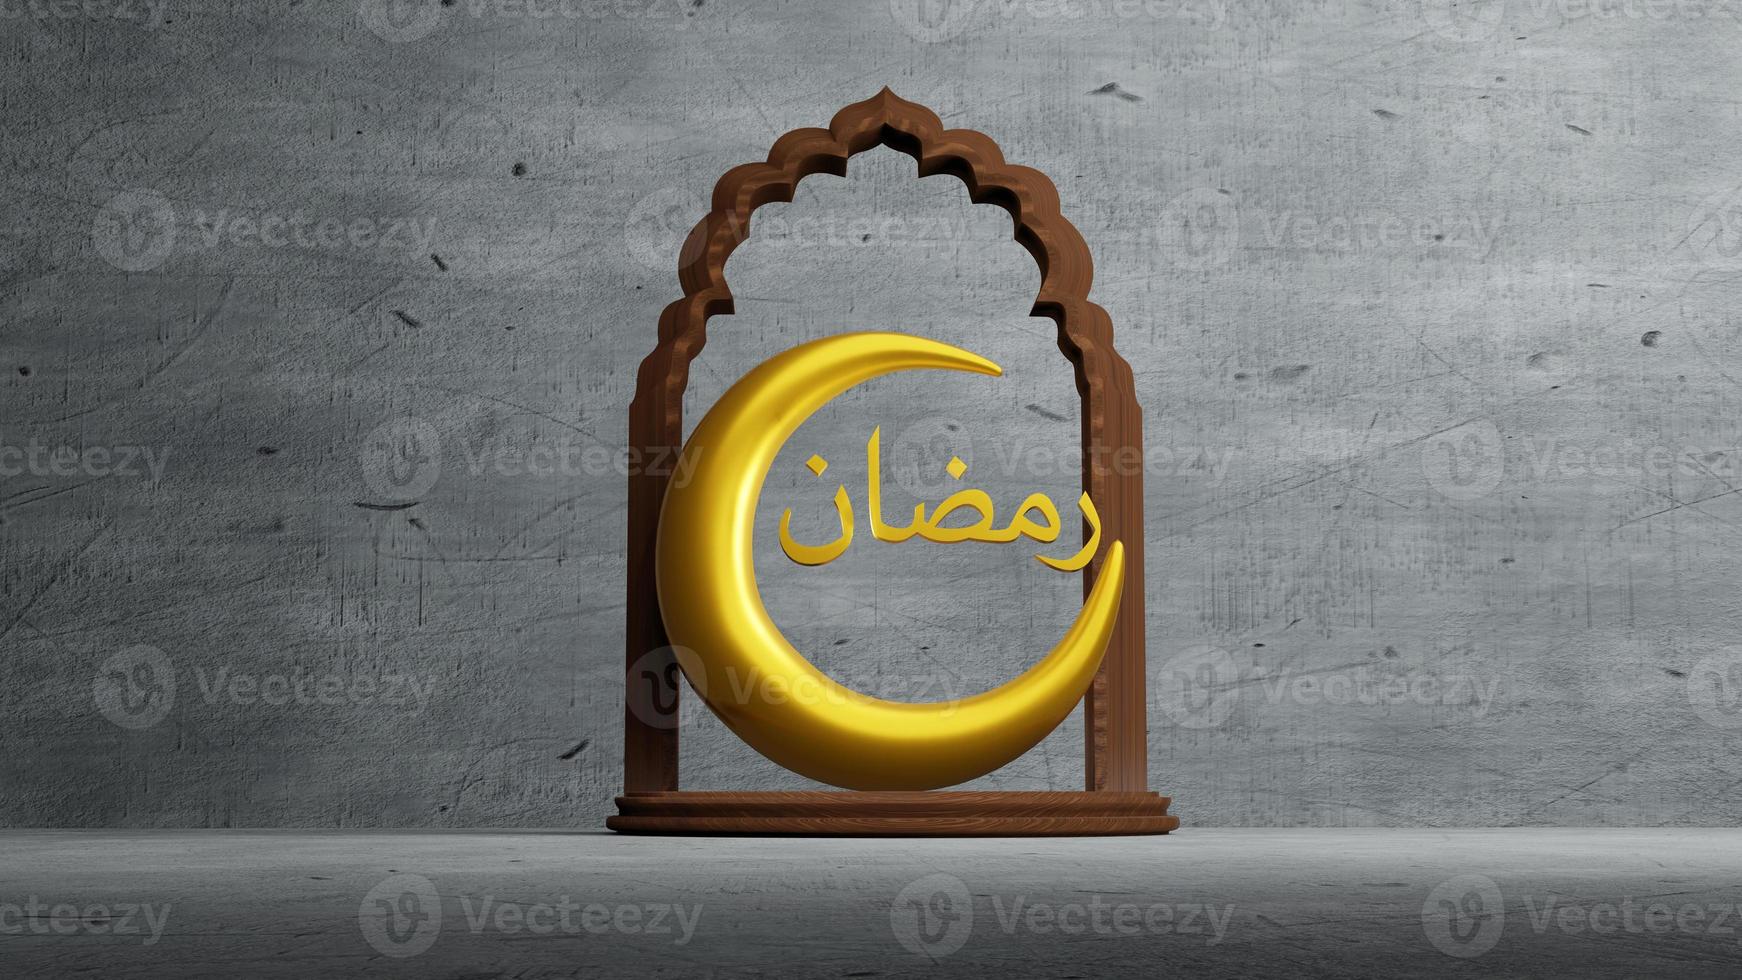 halvmåne symbol för islam med ramadan arabiska alfabetet, 3D-rendering foto